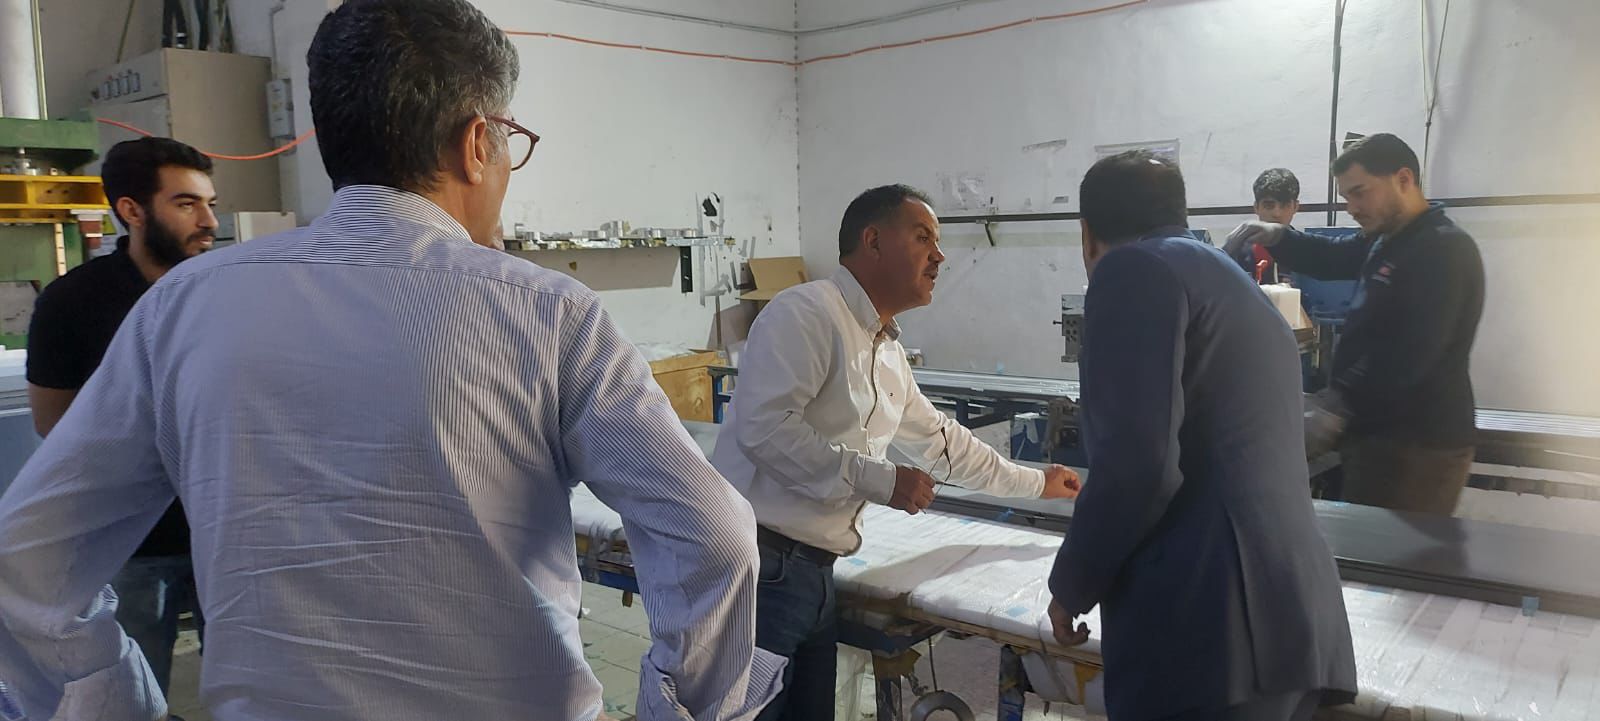 المدني الديمقراطي يزور عمال مصانع شرق عمان ويهنئهم بعيدهم